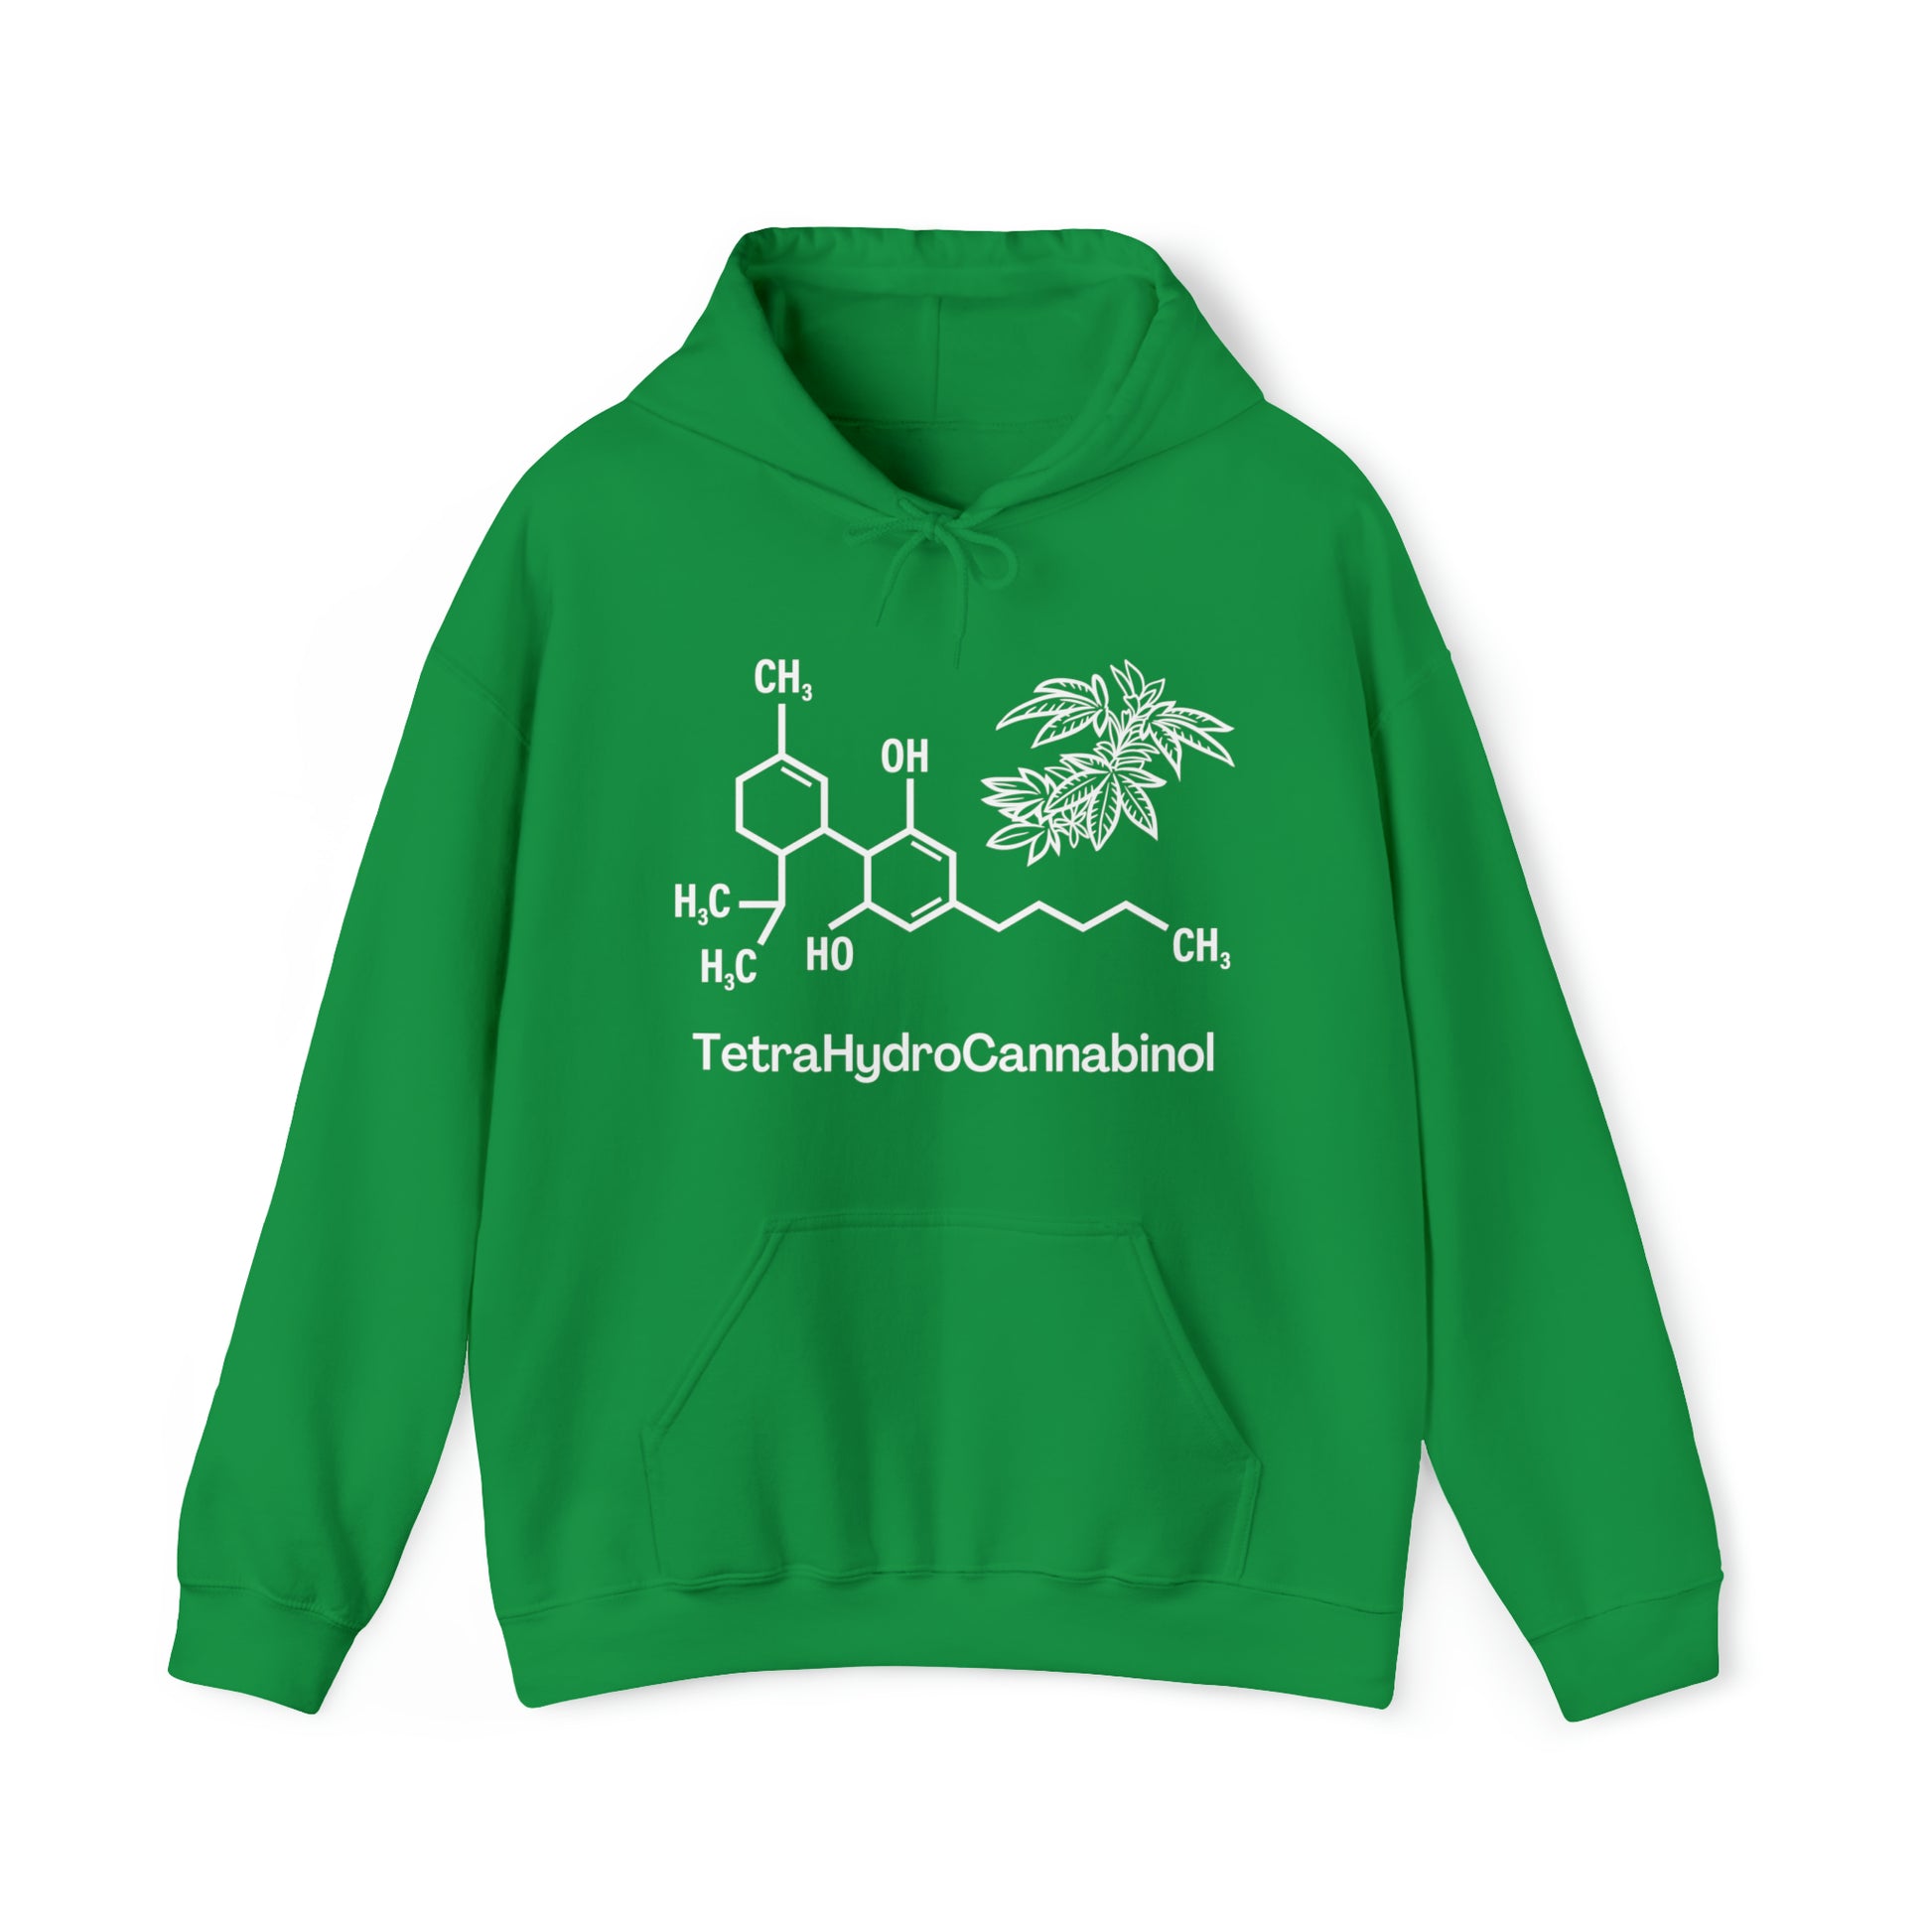 Irish Green Tetrahydrocannabinol (THC) Cannabis Hoodie